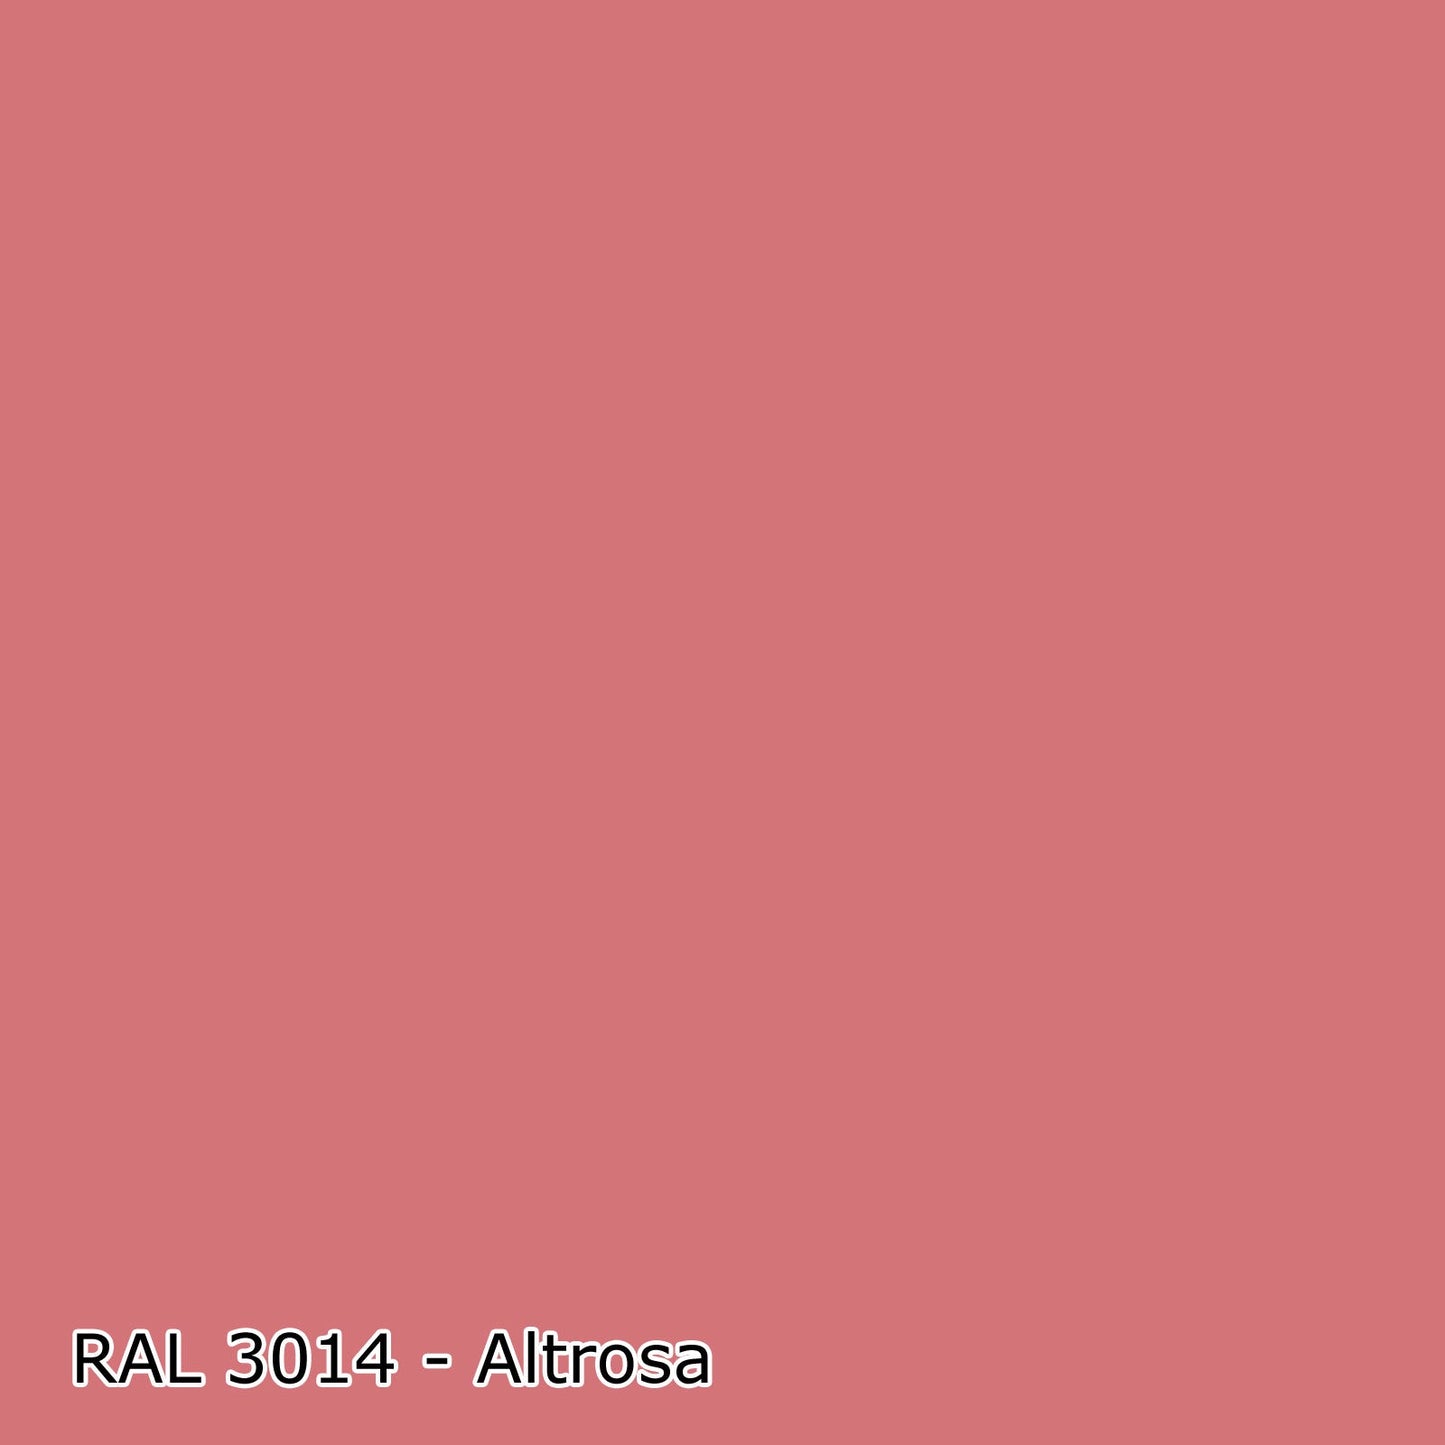 5 L Latexfarbe, RAL Farbwahl - SEIDENMATT (RAL 1000 - 6007)